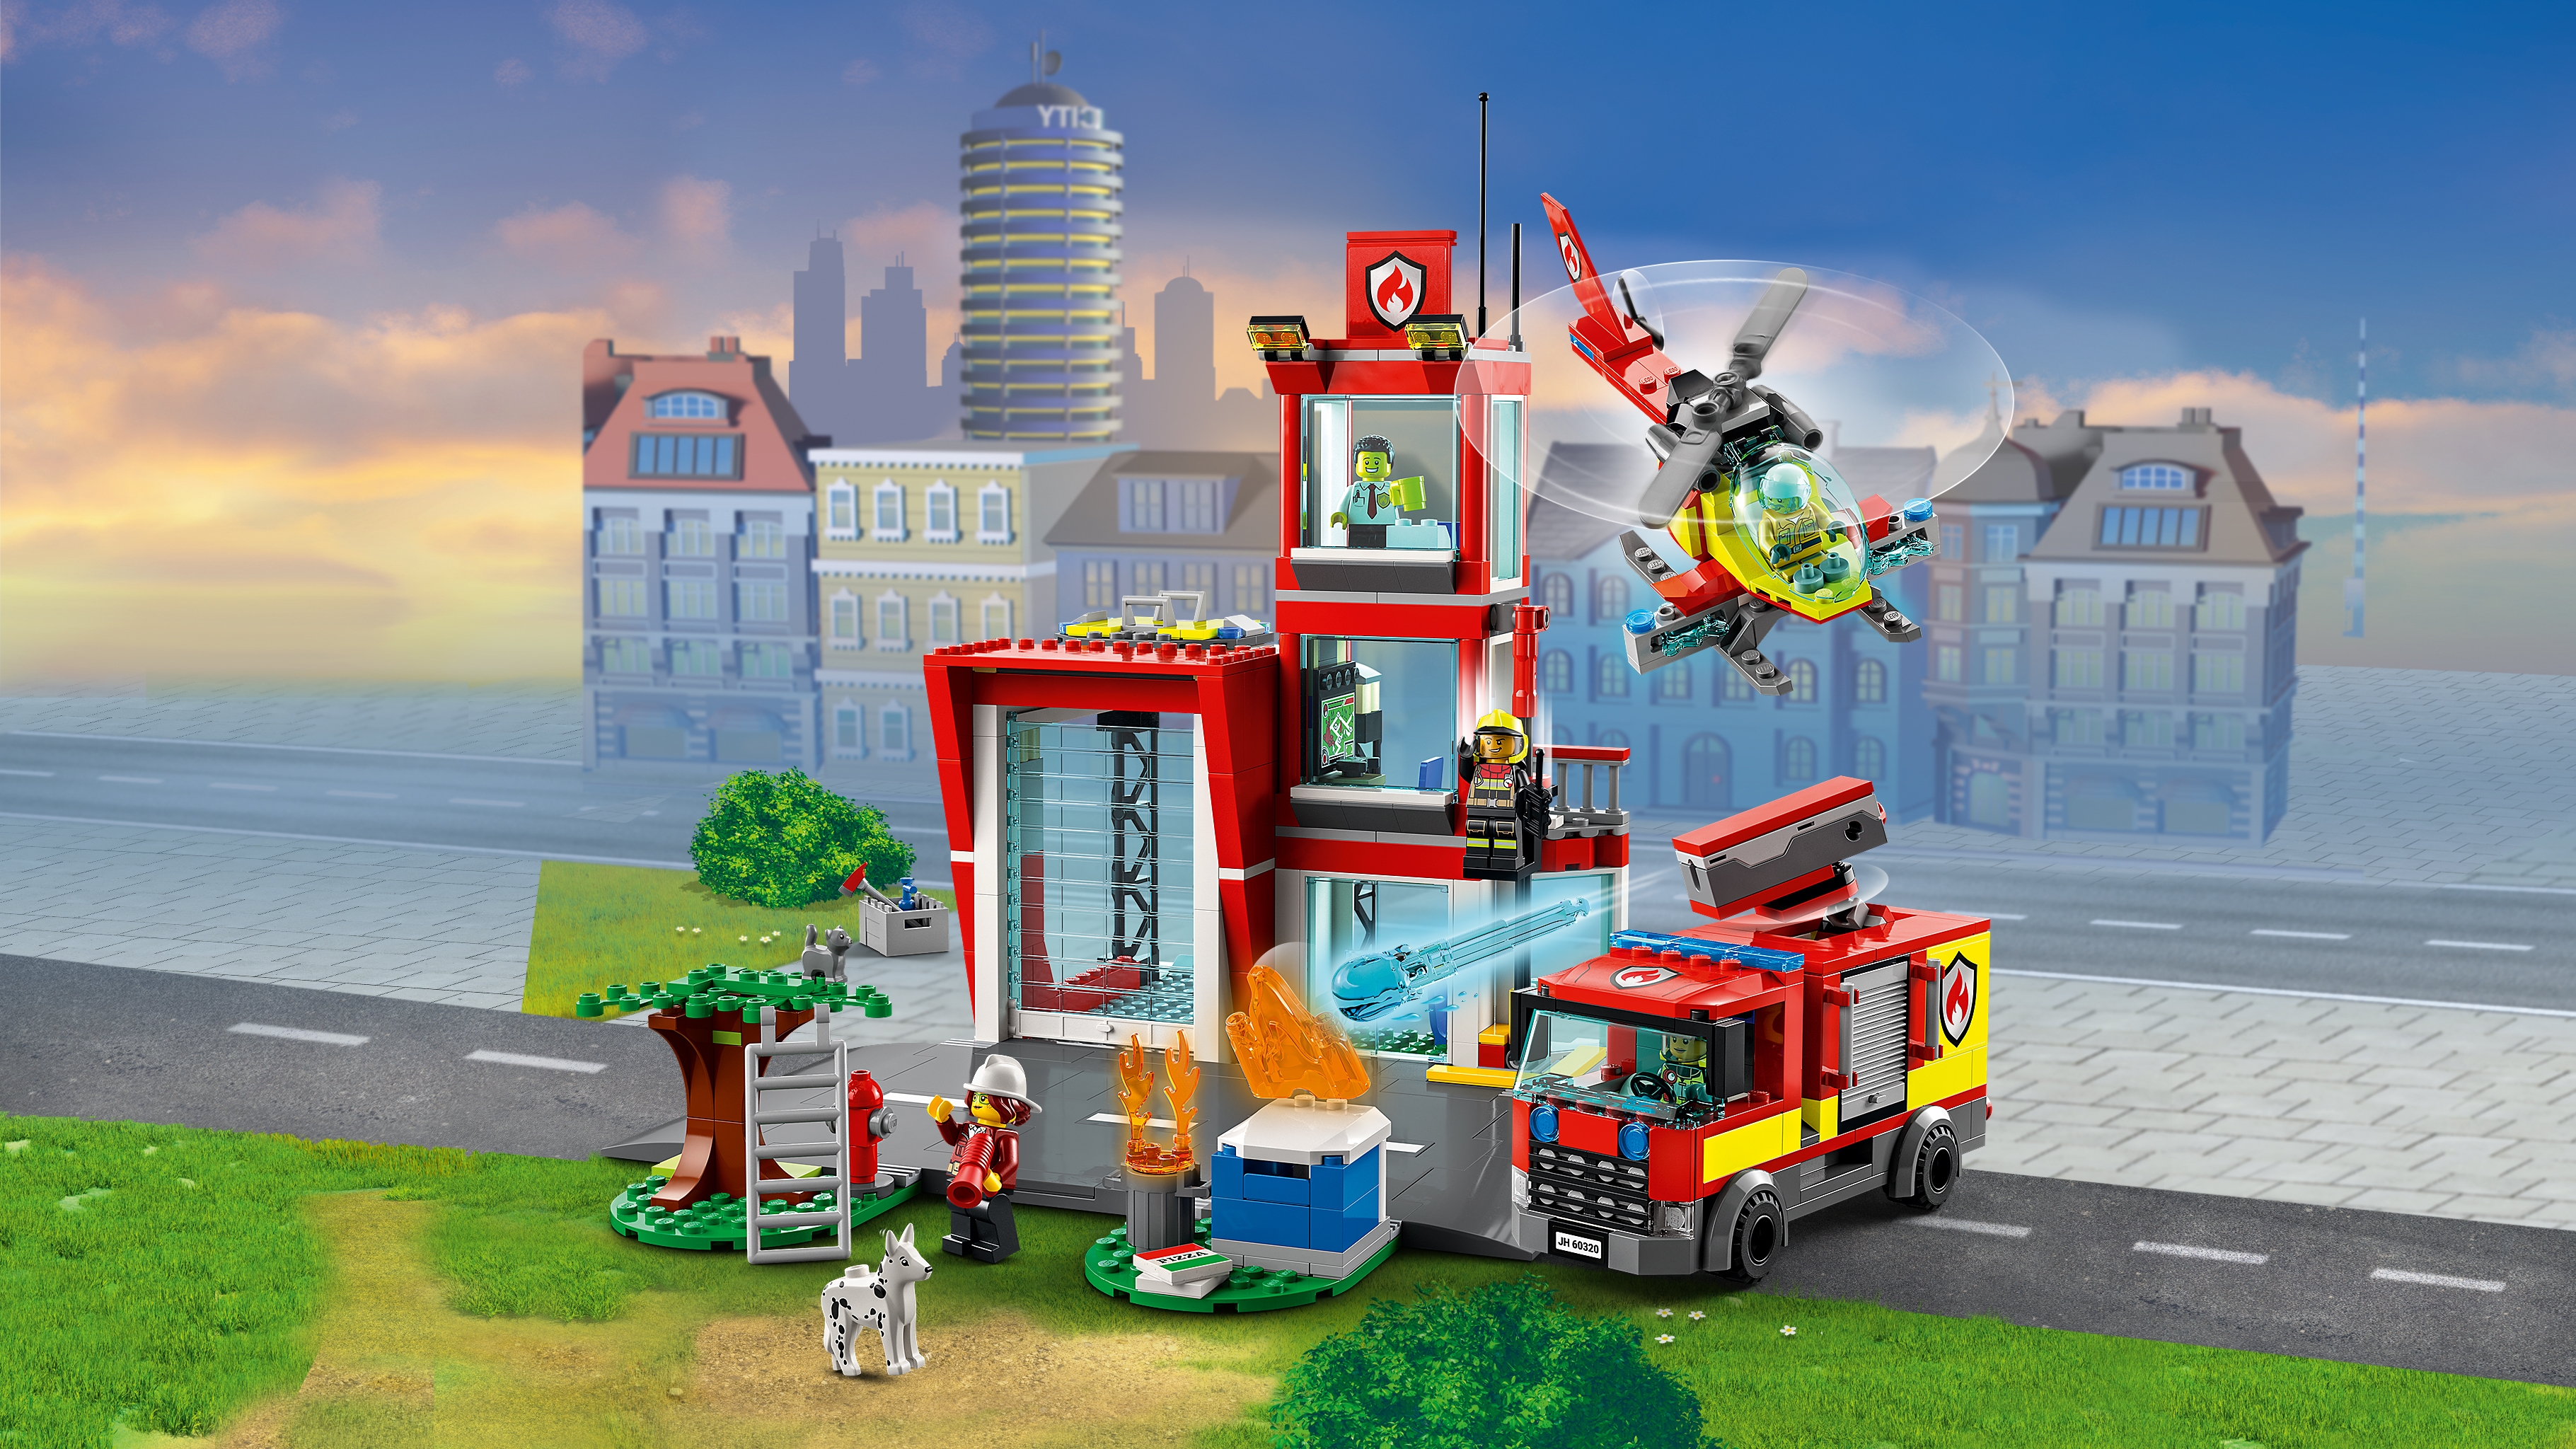 Ewell wang Mail Brandweerkazerne 60320 - LEGO® City sets - LEGO.com voor kinderen